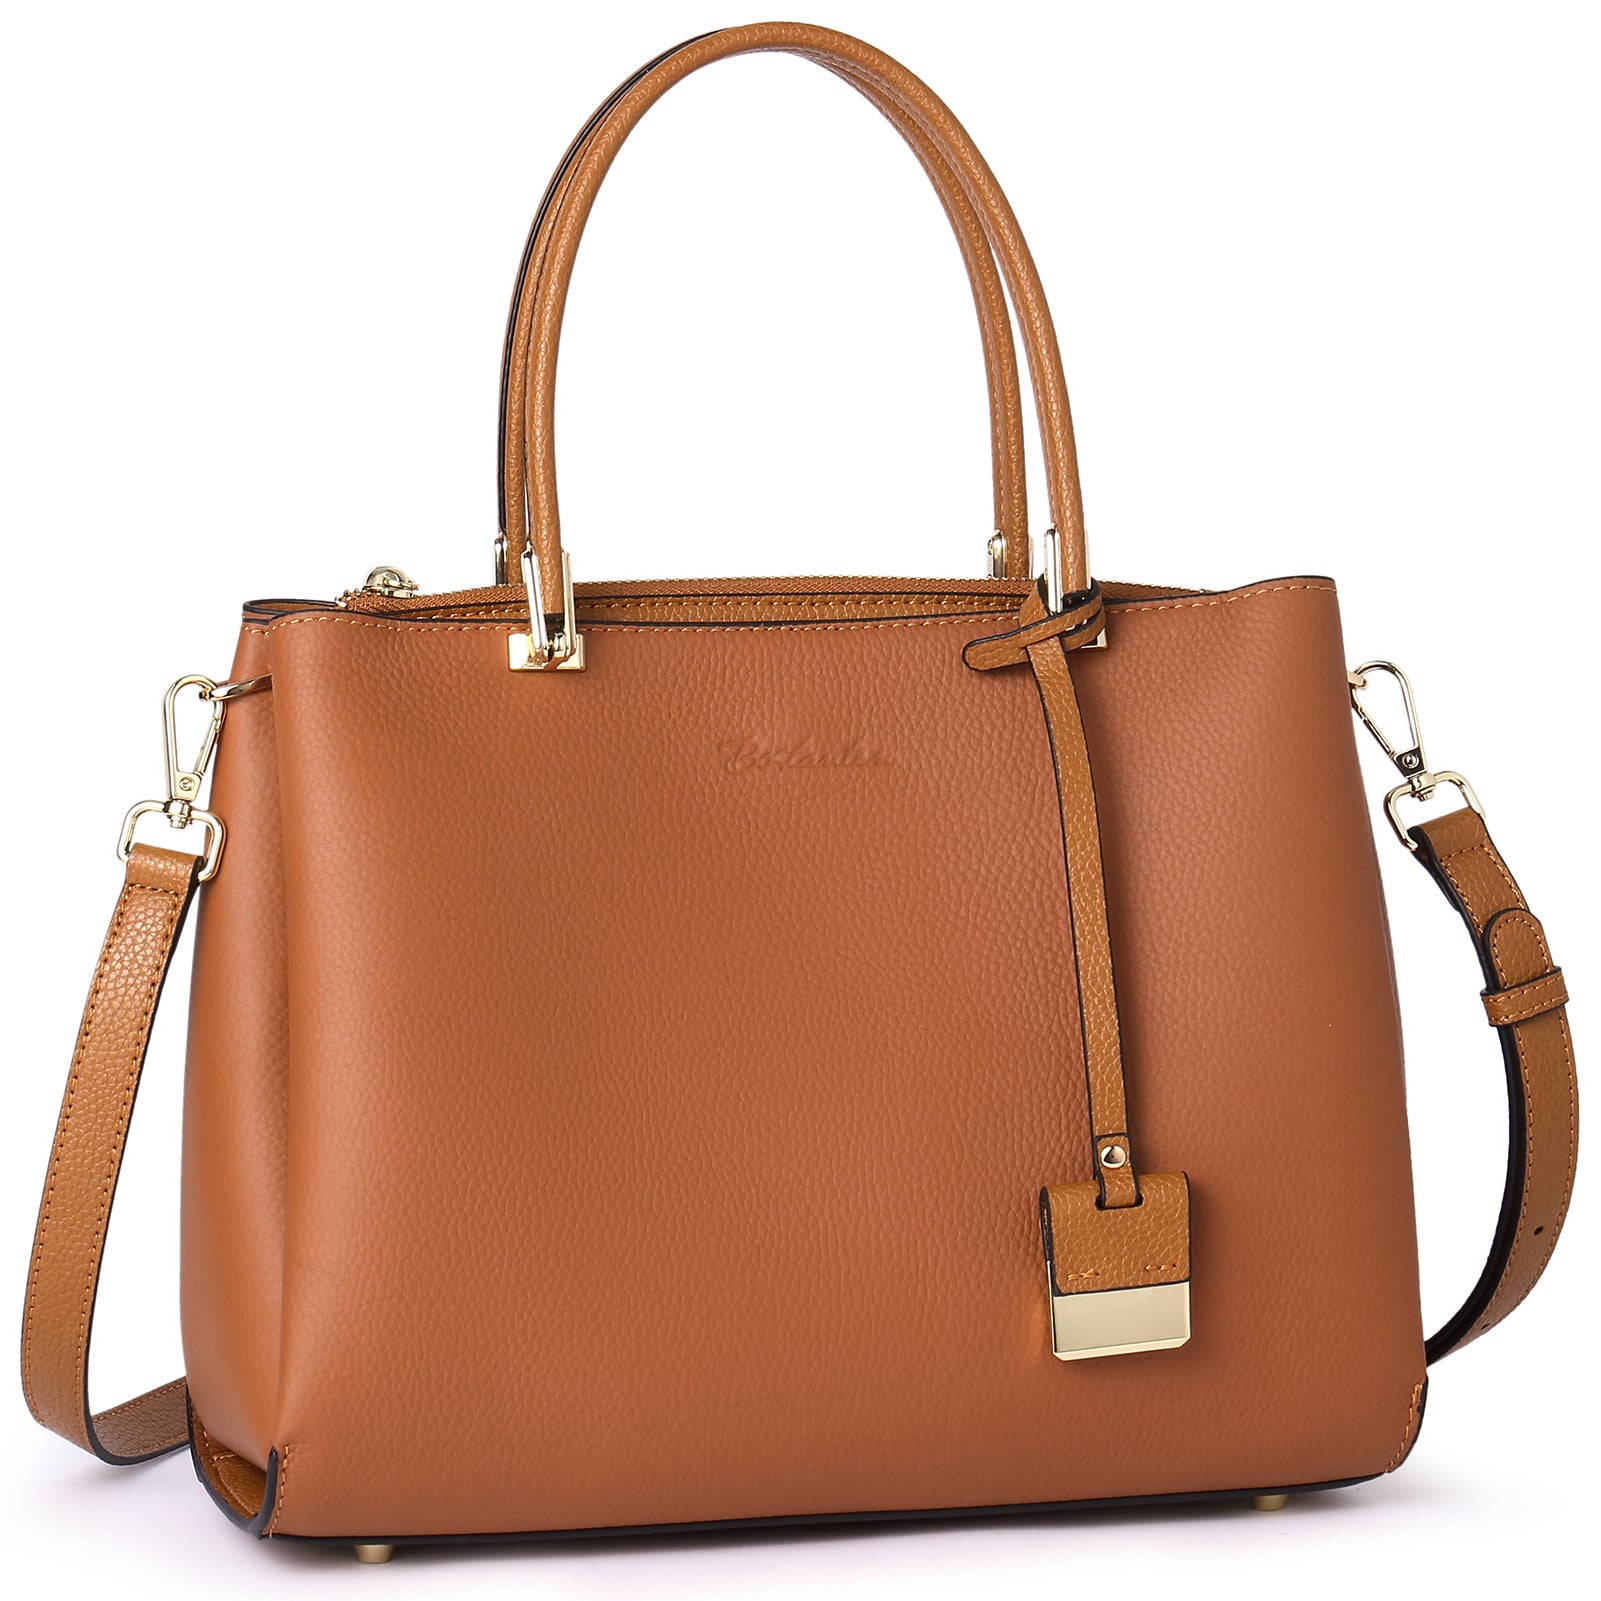 BOSTANTEN Handbags for Women Genuine Leather Designer Satchel Purses T ...